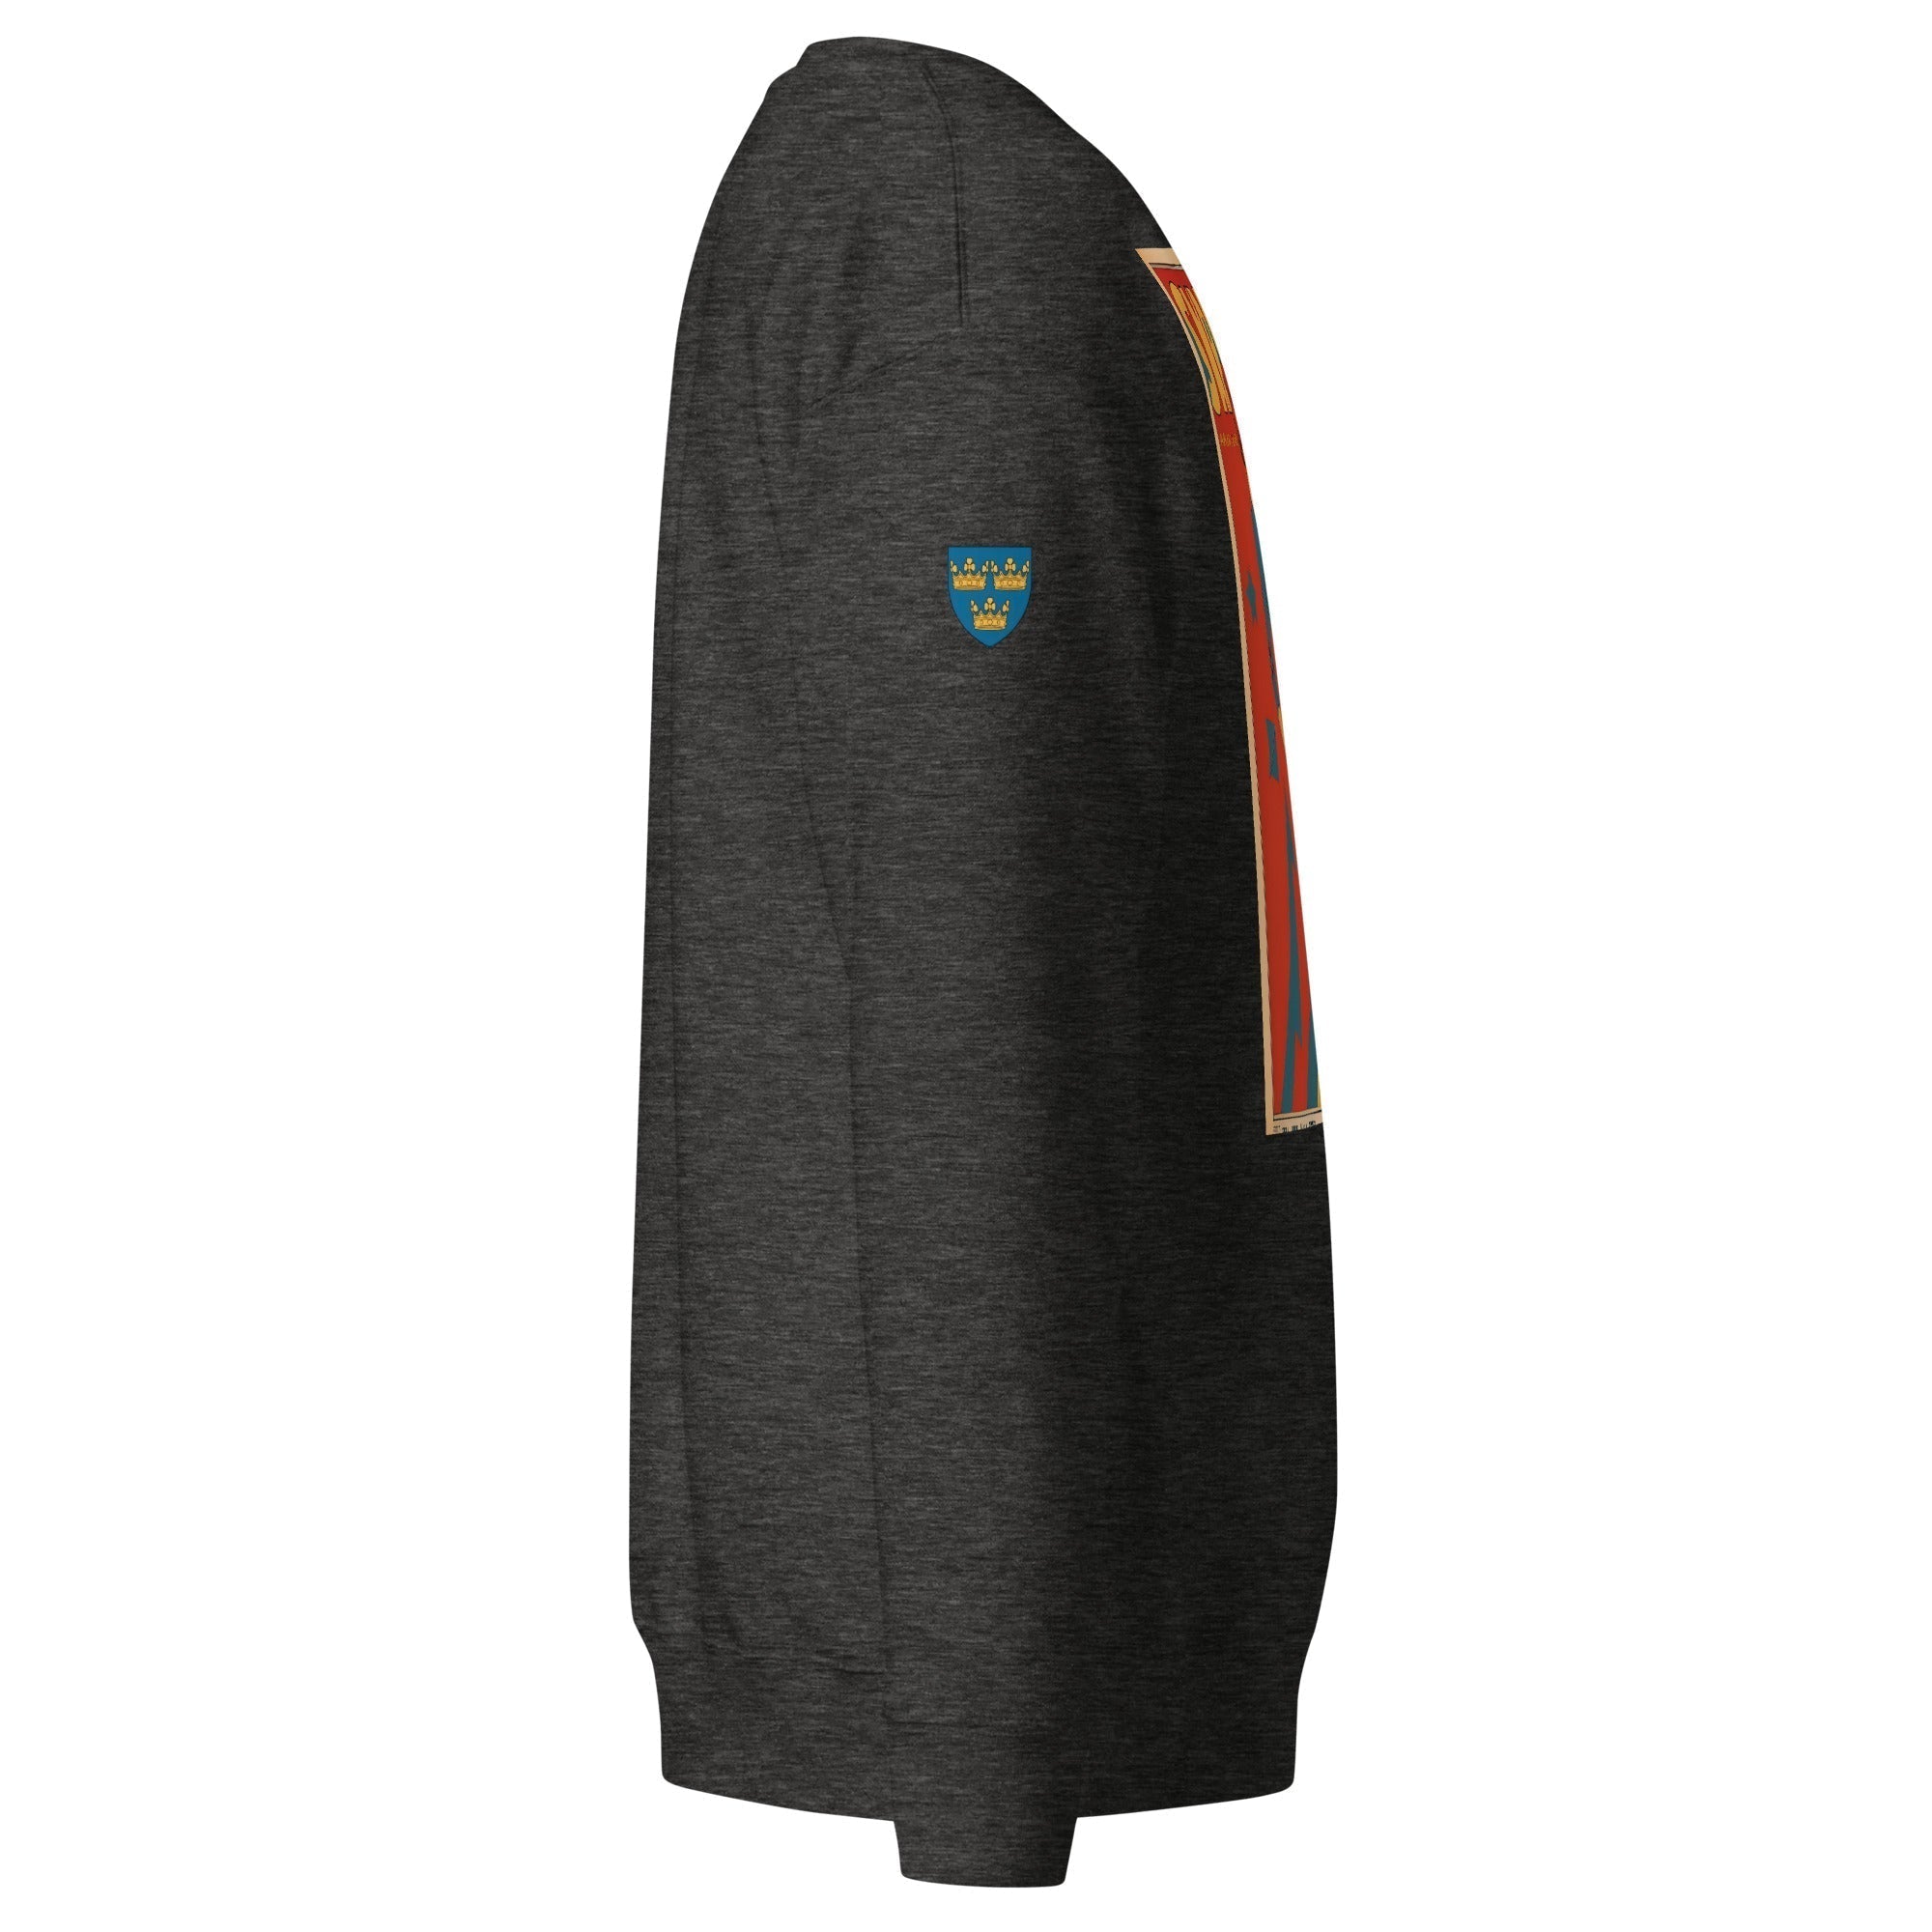 Unisex Premium Sweatshirt - Swedish Vintage Fashion Series v.51 - GRAPHIC T-SHIRTS